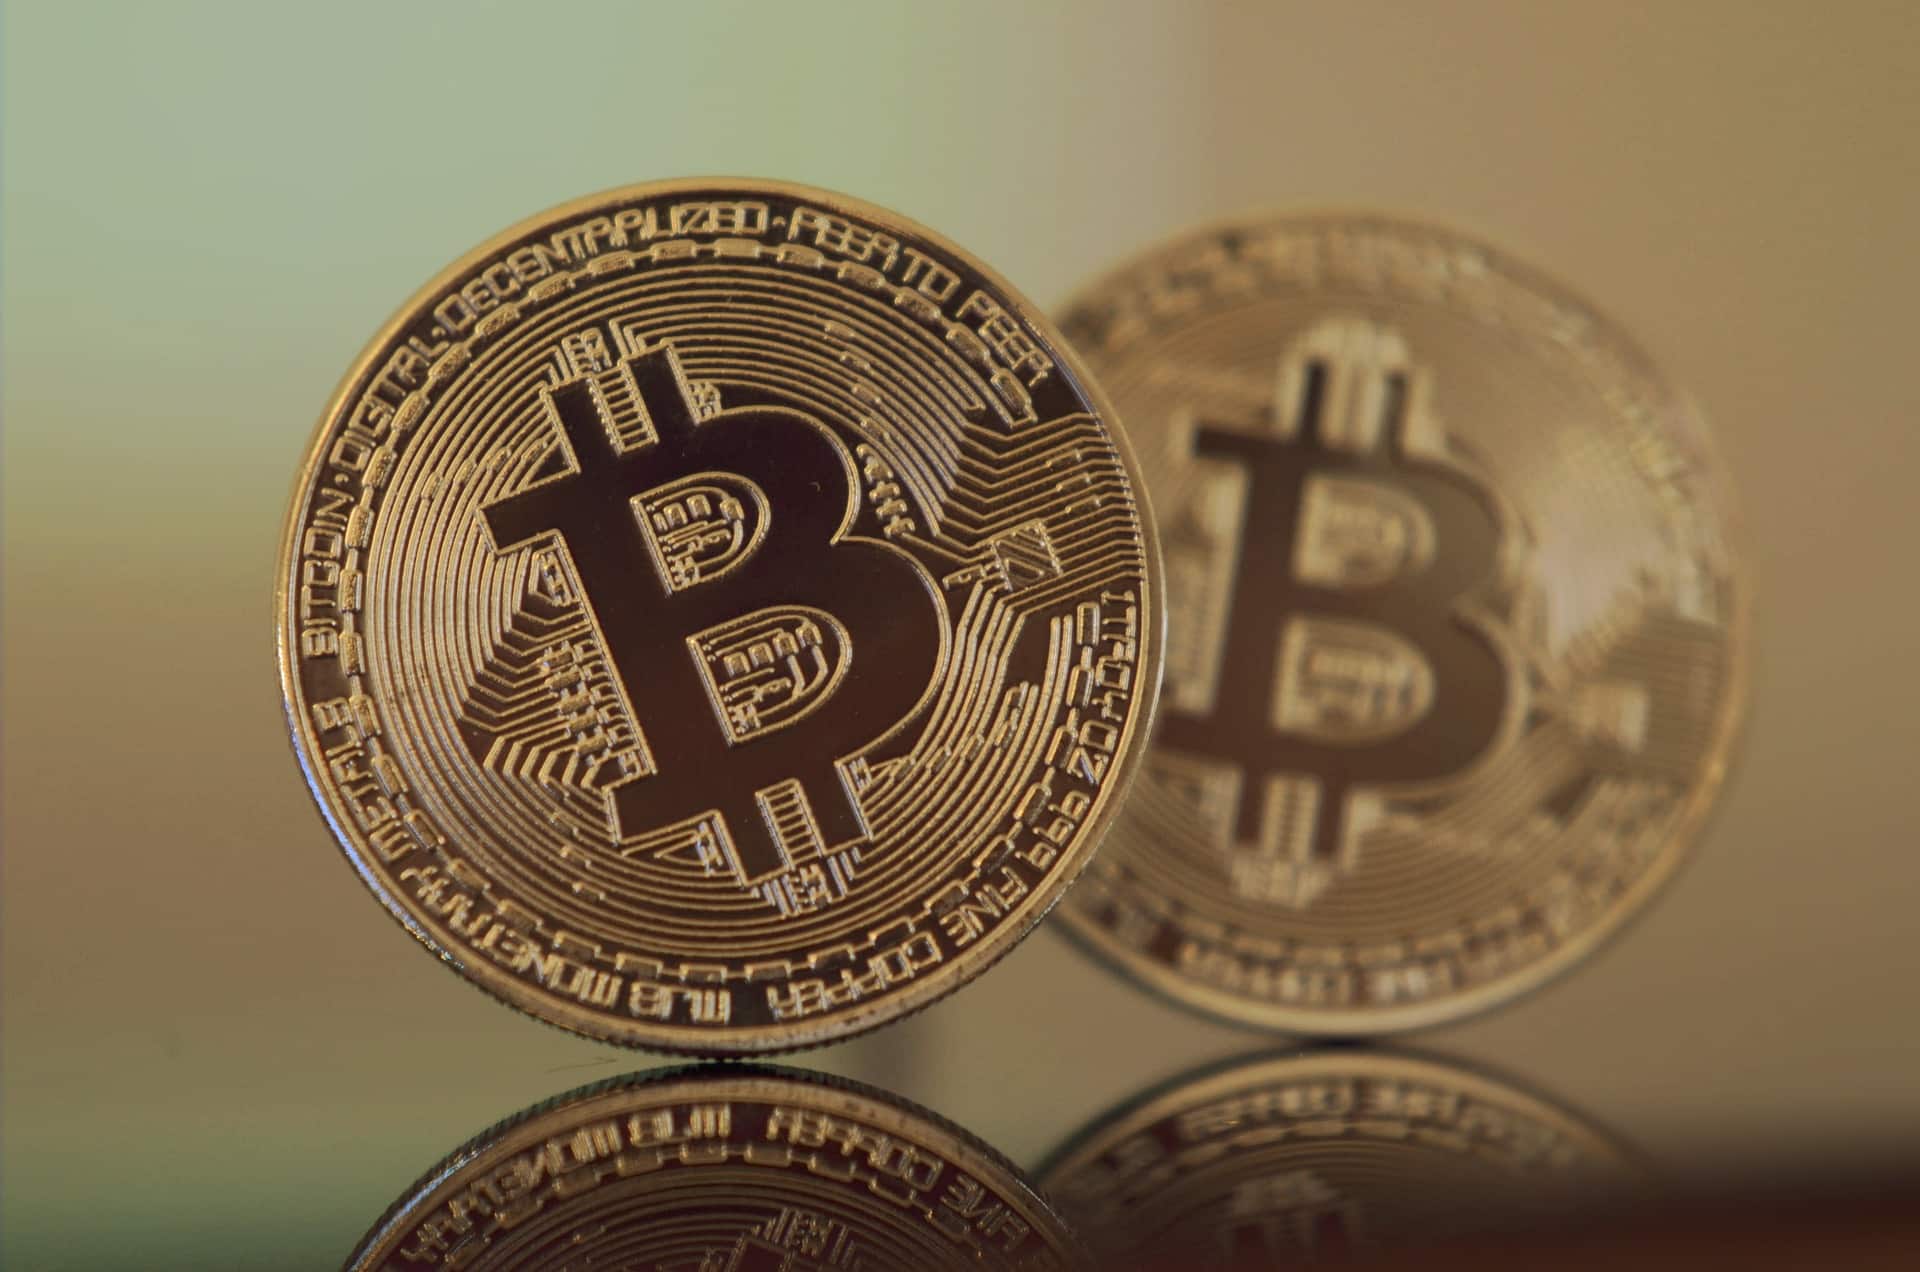 2 bitcoin coins